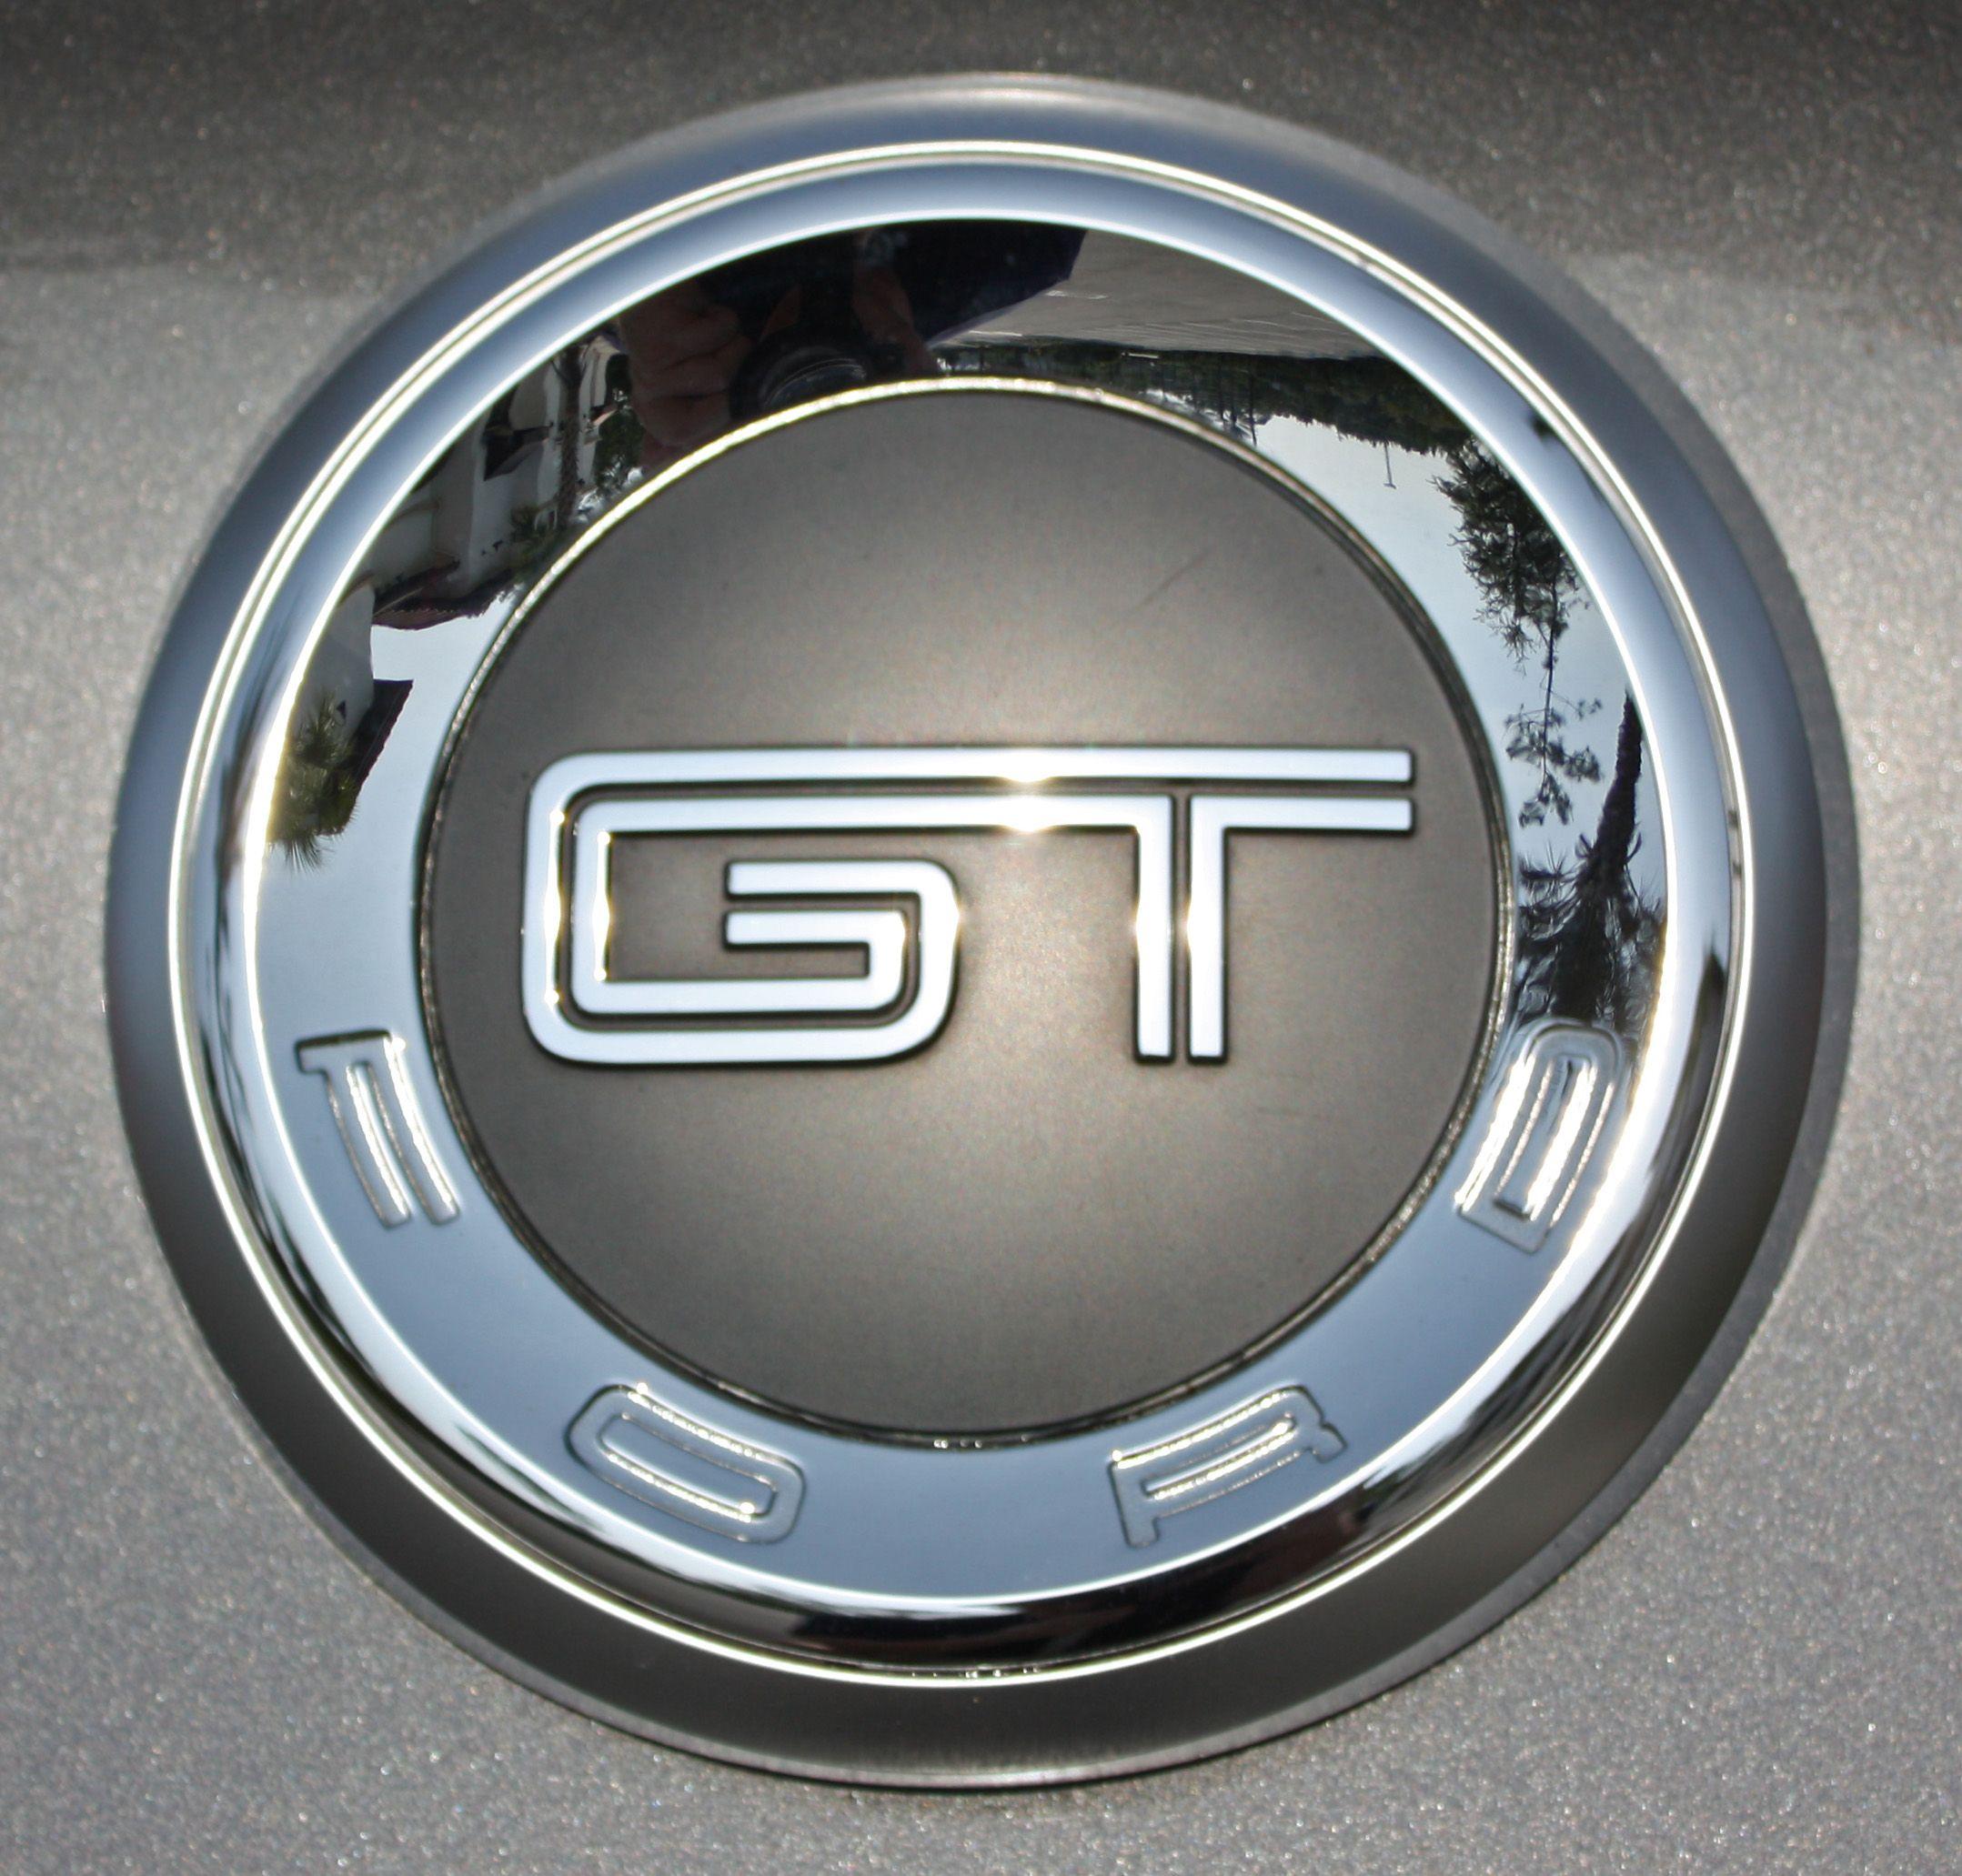 Mustang GT Logo - Mustang gt Logos